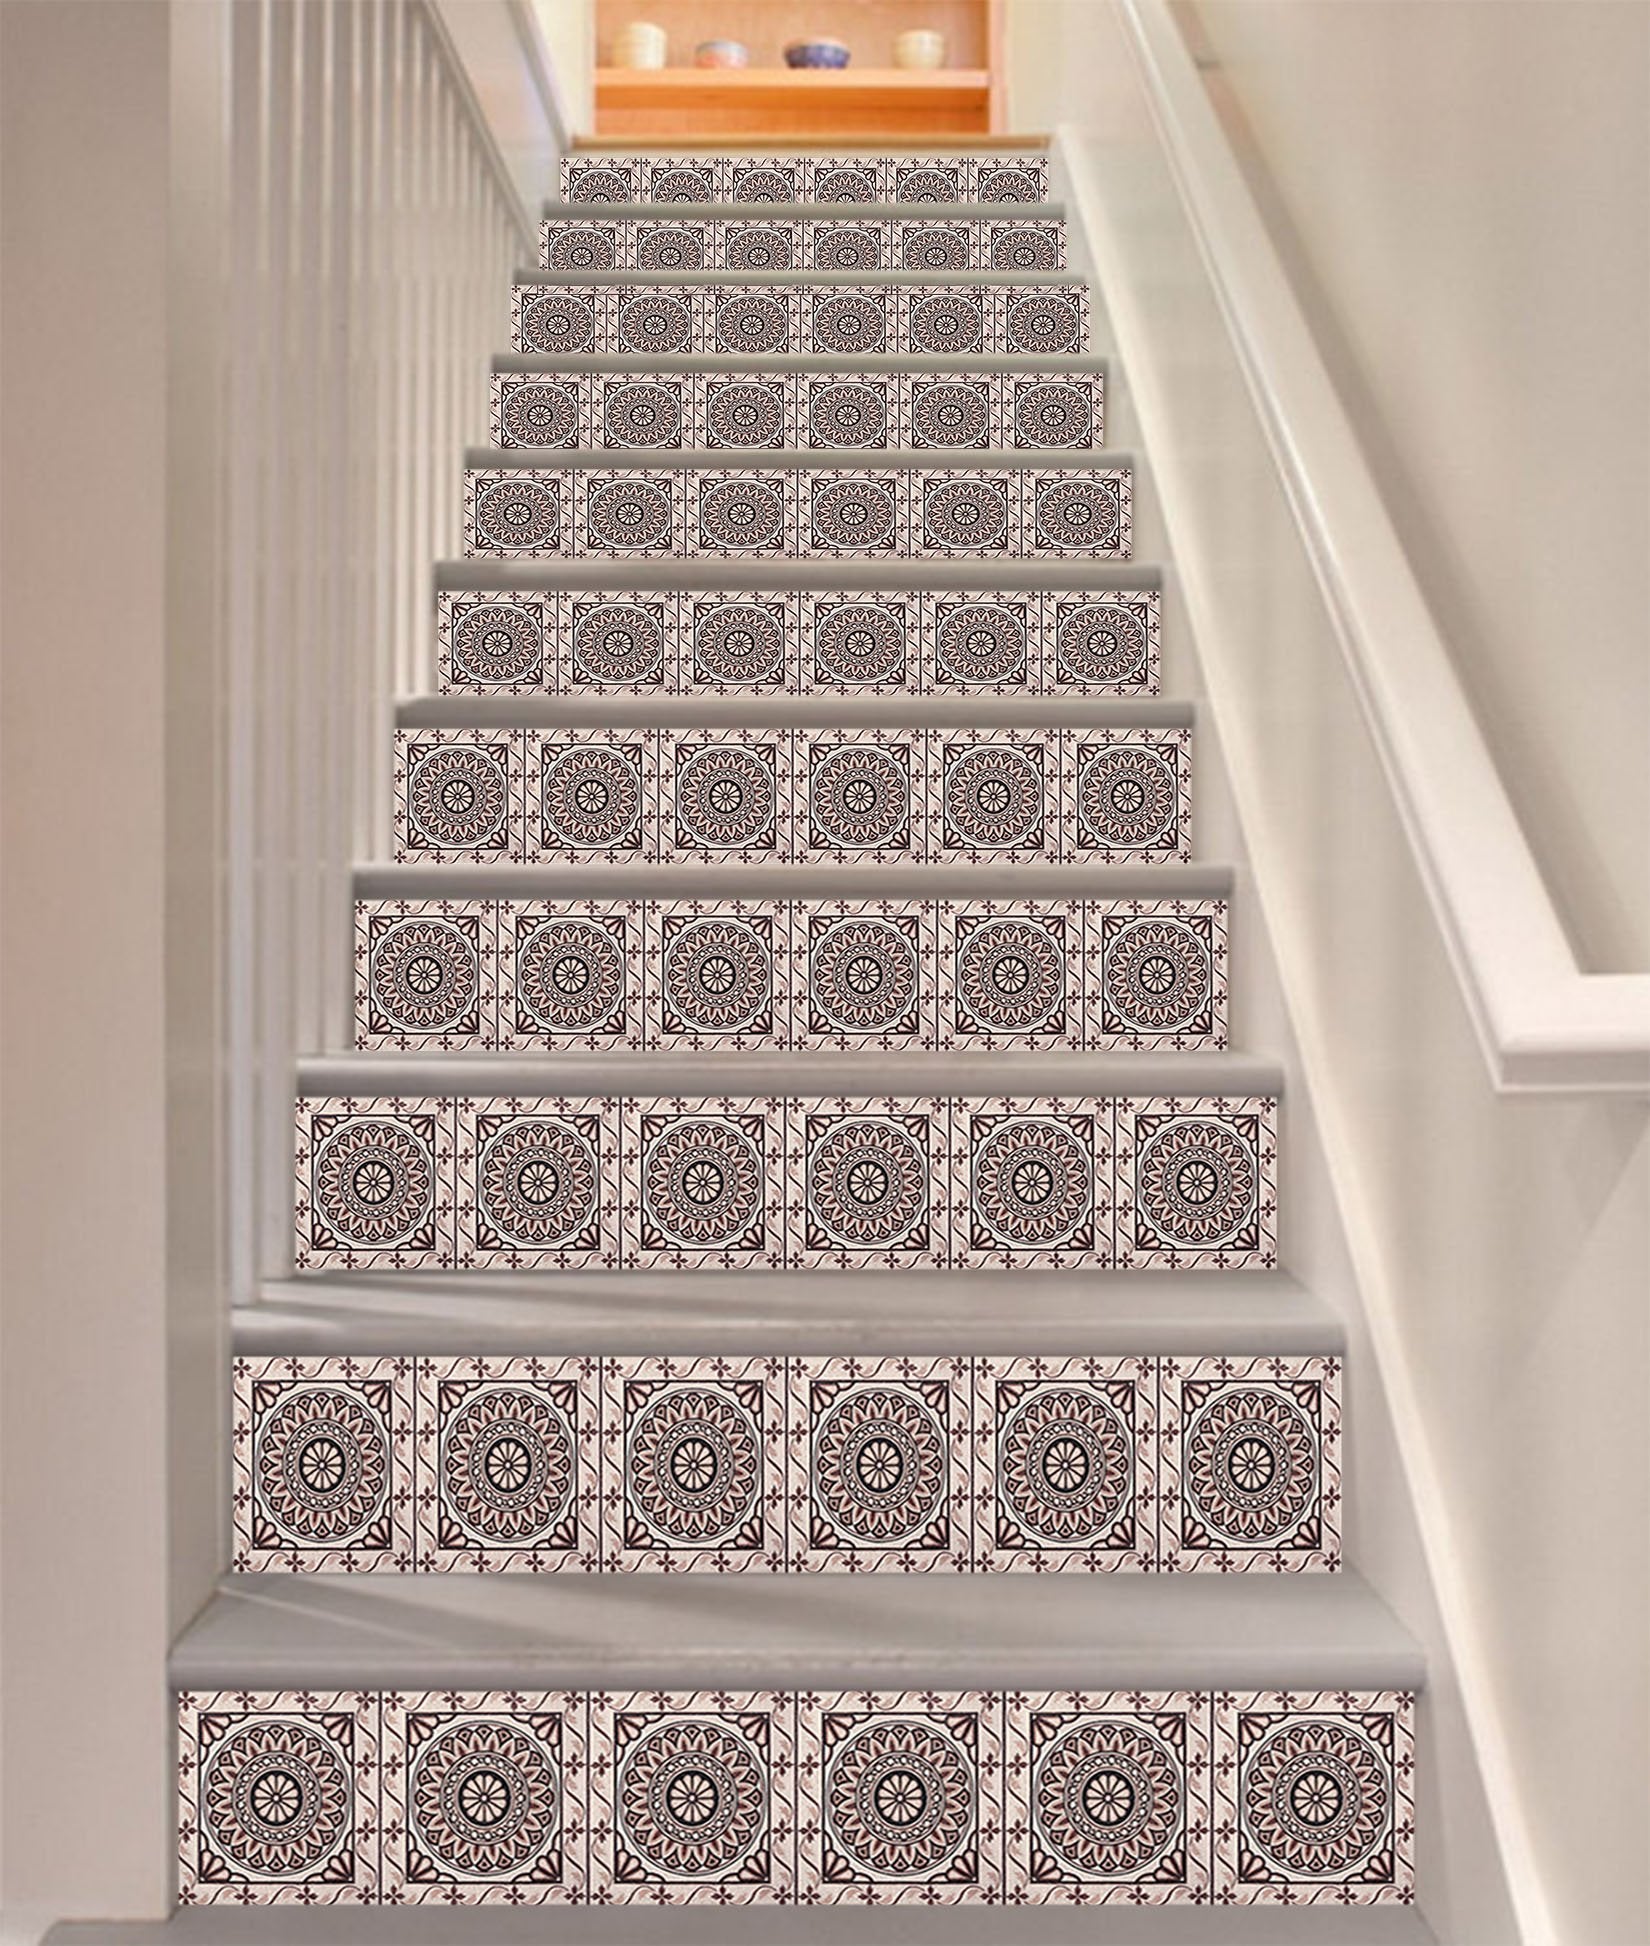 3D Reto Pattern 328 Stair Risers Wallpaper AJ Wallpaper 